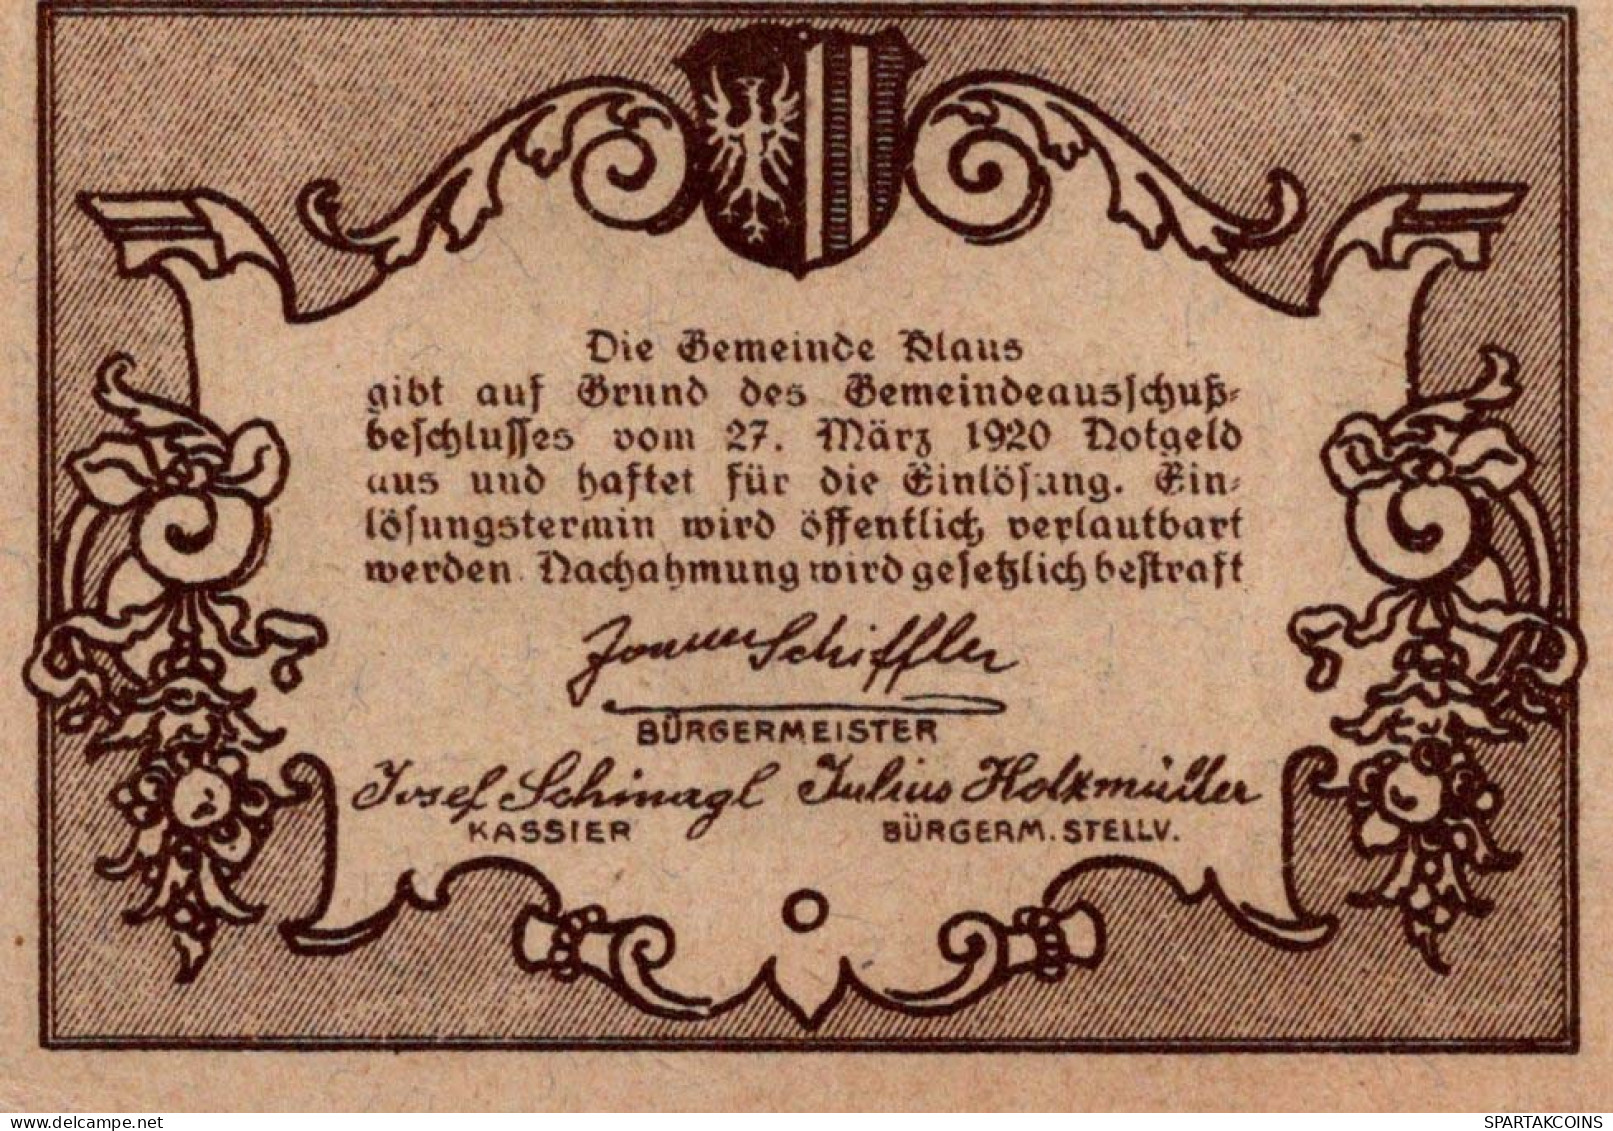 10 HELLER 1920 Stadt KLAUS Oberösterreich Österreich UNC Österreich Notgeld Banknote #PH383 - [11] Local Banknote Issues